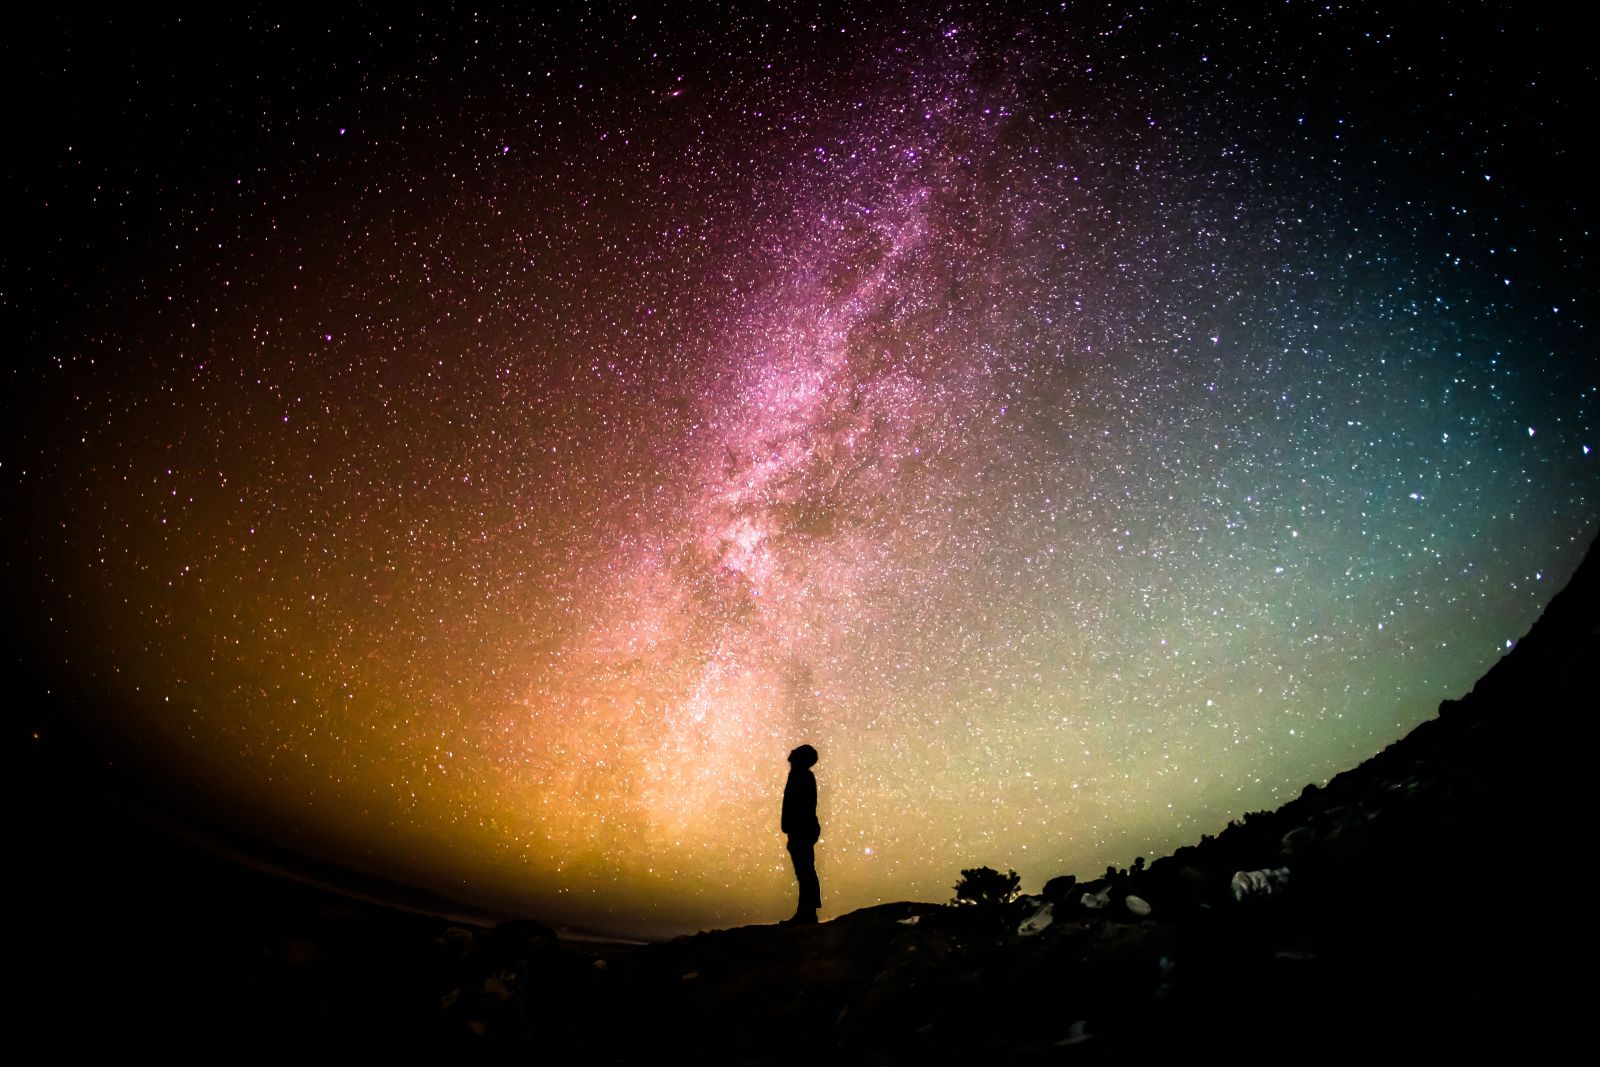 Ein Mann steht unter den Sternen und blickt gehn bunten Nachthimmel. Man sieht die Milchstraße. Das Ganze wurde mit einem Fishey aufgenommen.